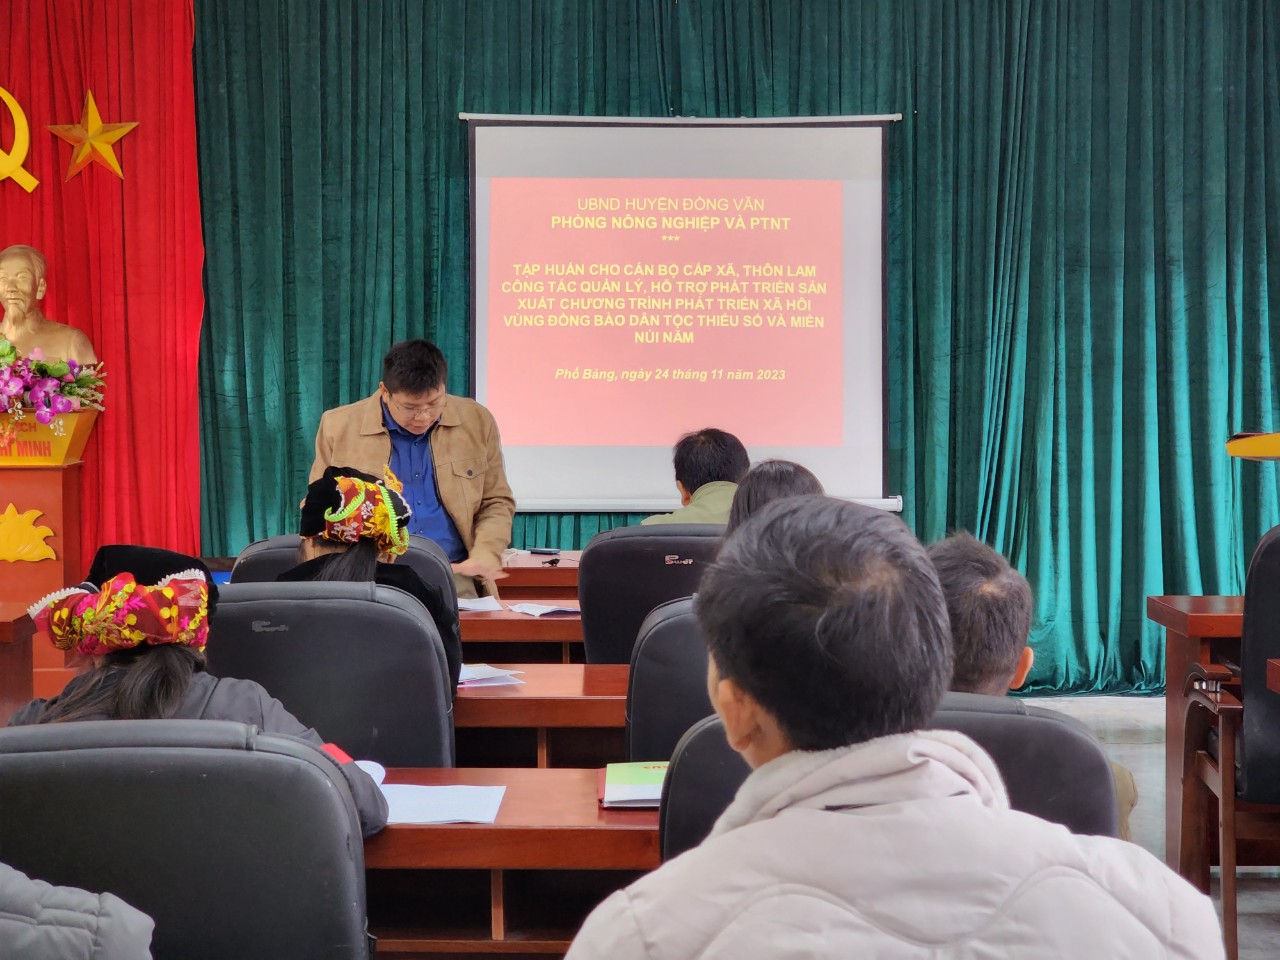 Phòng nông nghiệp và phát triển nông thôn huyện Đồng Văn mở lớp tập huấn cụm về các chính sách liên quan đến Chương trình vùng đồng bào dân tộc thiểu số và miền núi có liên quan đến lĩnh vực phát triển sản xuất Nông lâm nghiệp tại thị trấn Phố Bảng.